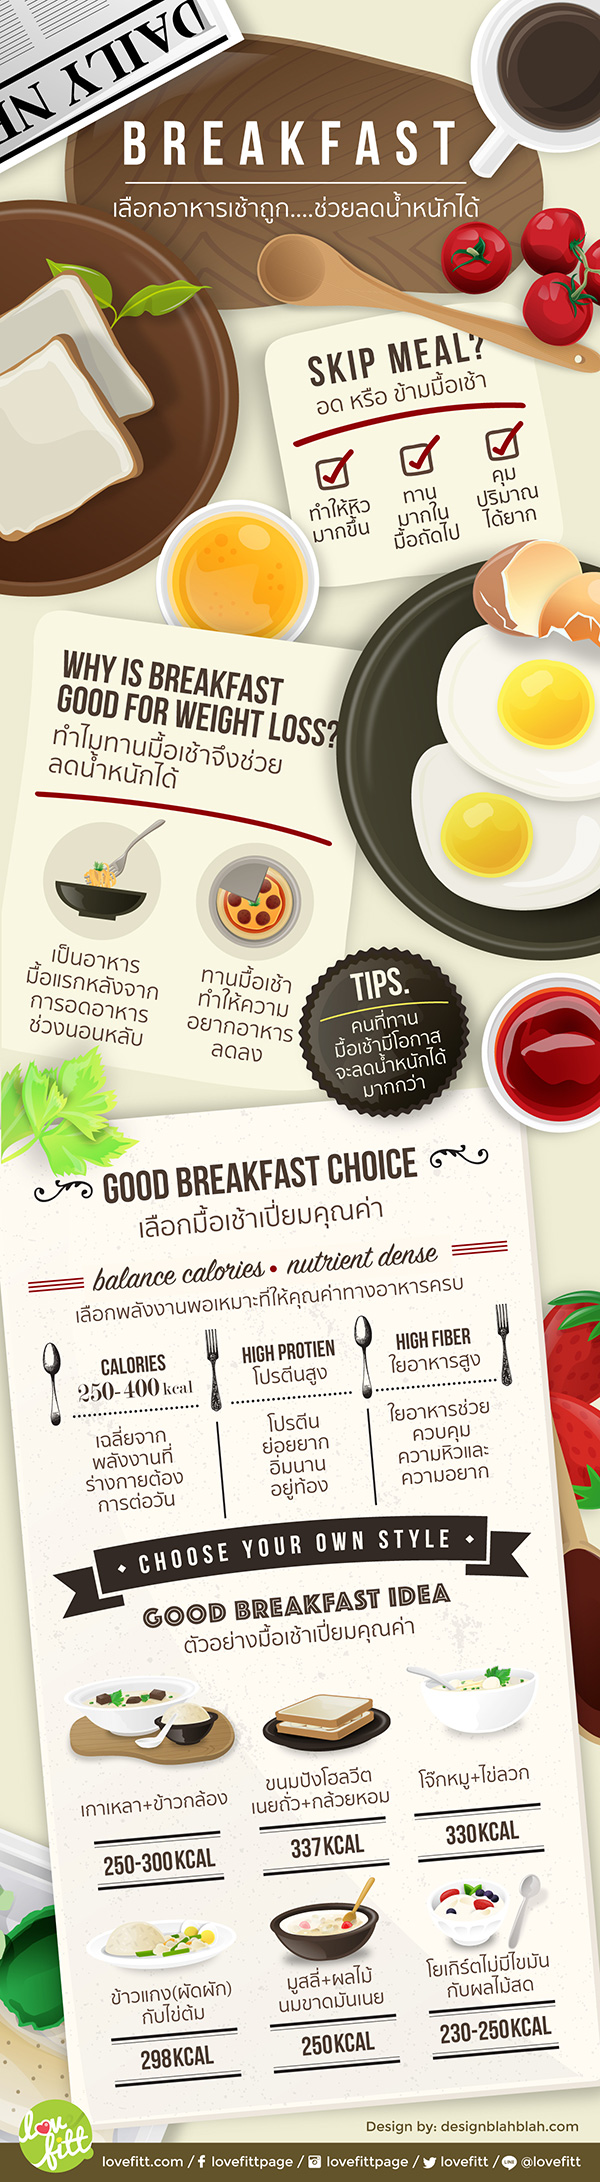 เลือกอาหารเช้าอย่างไรเมื่อลดน้ำหนัก